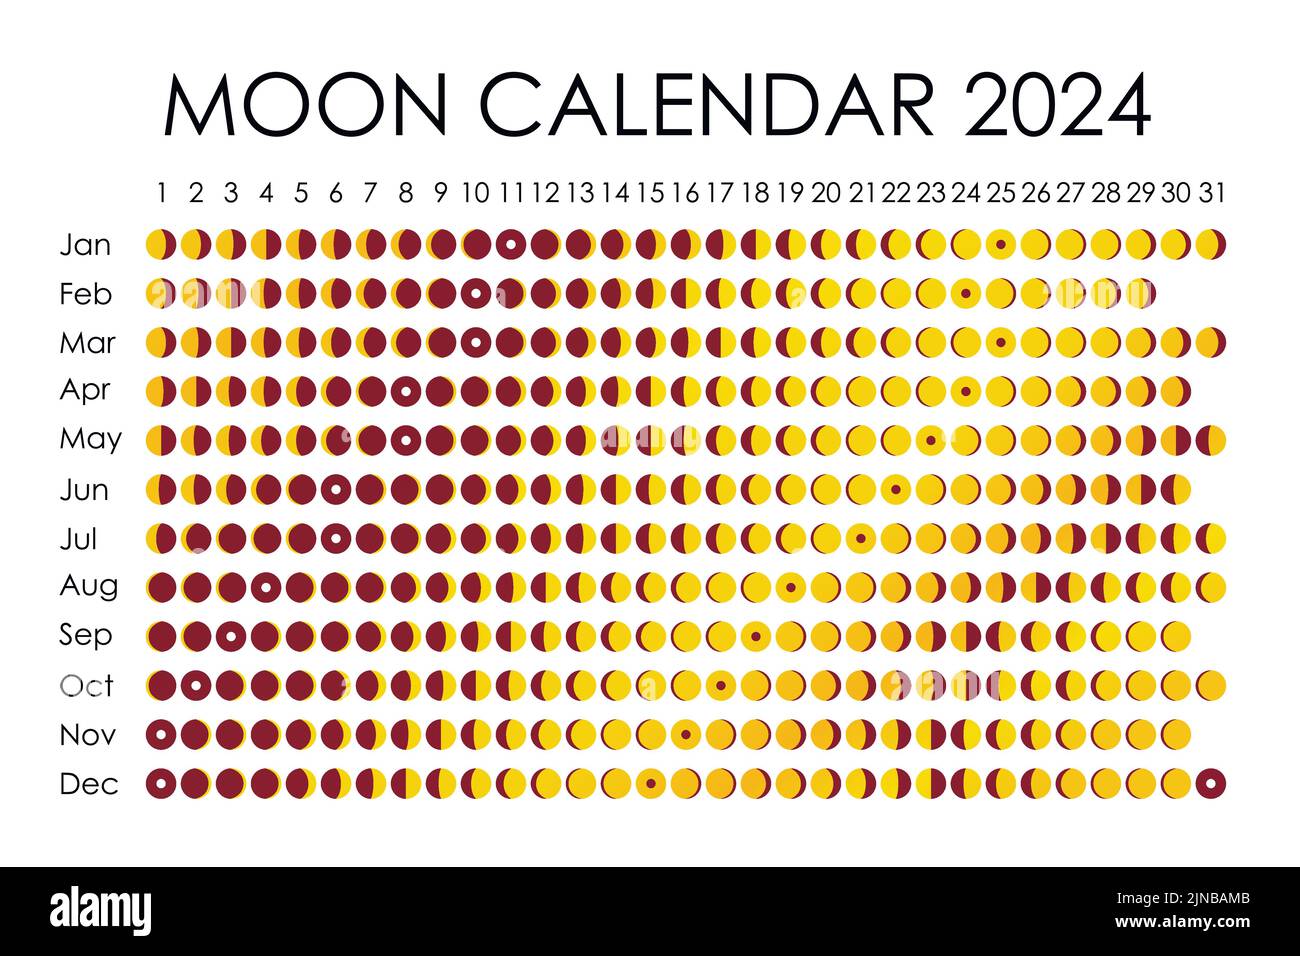 Календарь Луны 2024. Цикл лун на 2024. Календарь полнолуний 2024. График полнолуний 2024. Гороскоп март 2024 луна